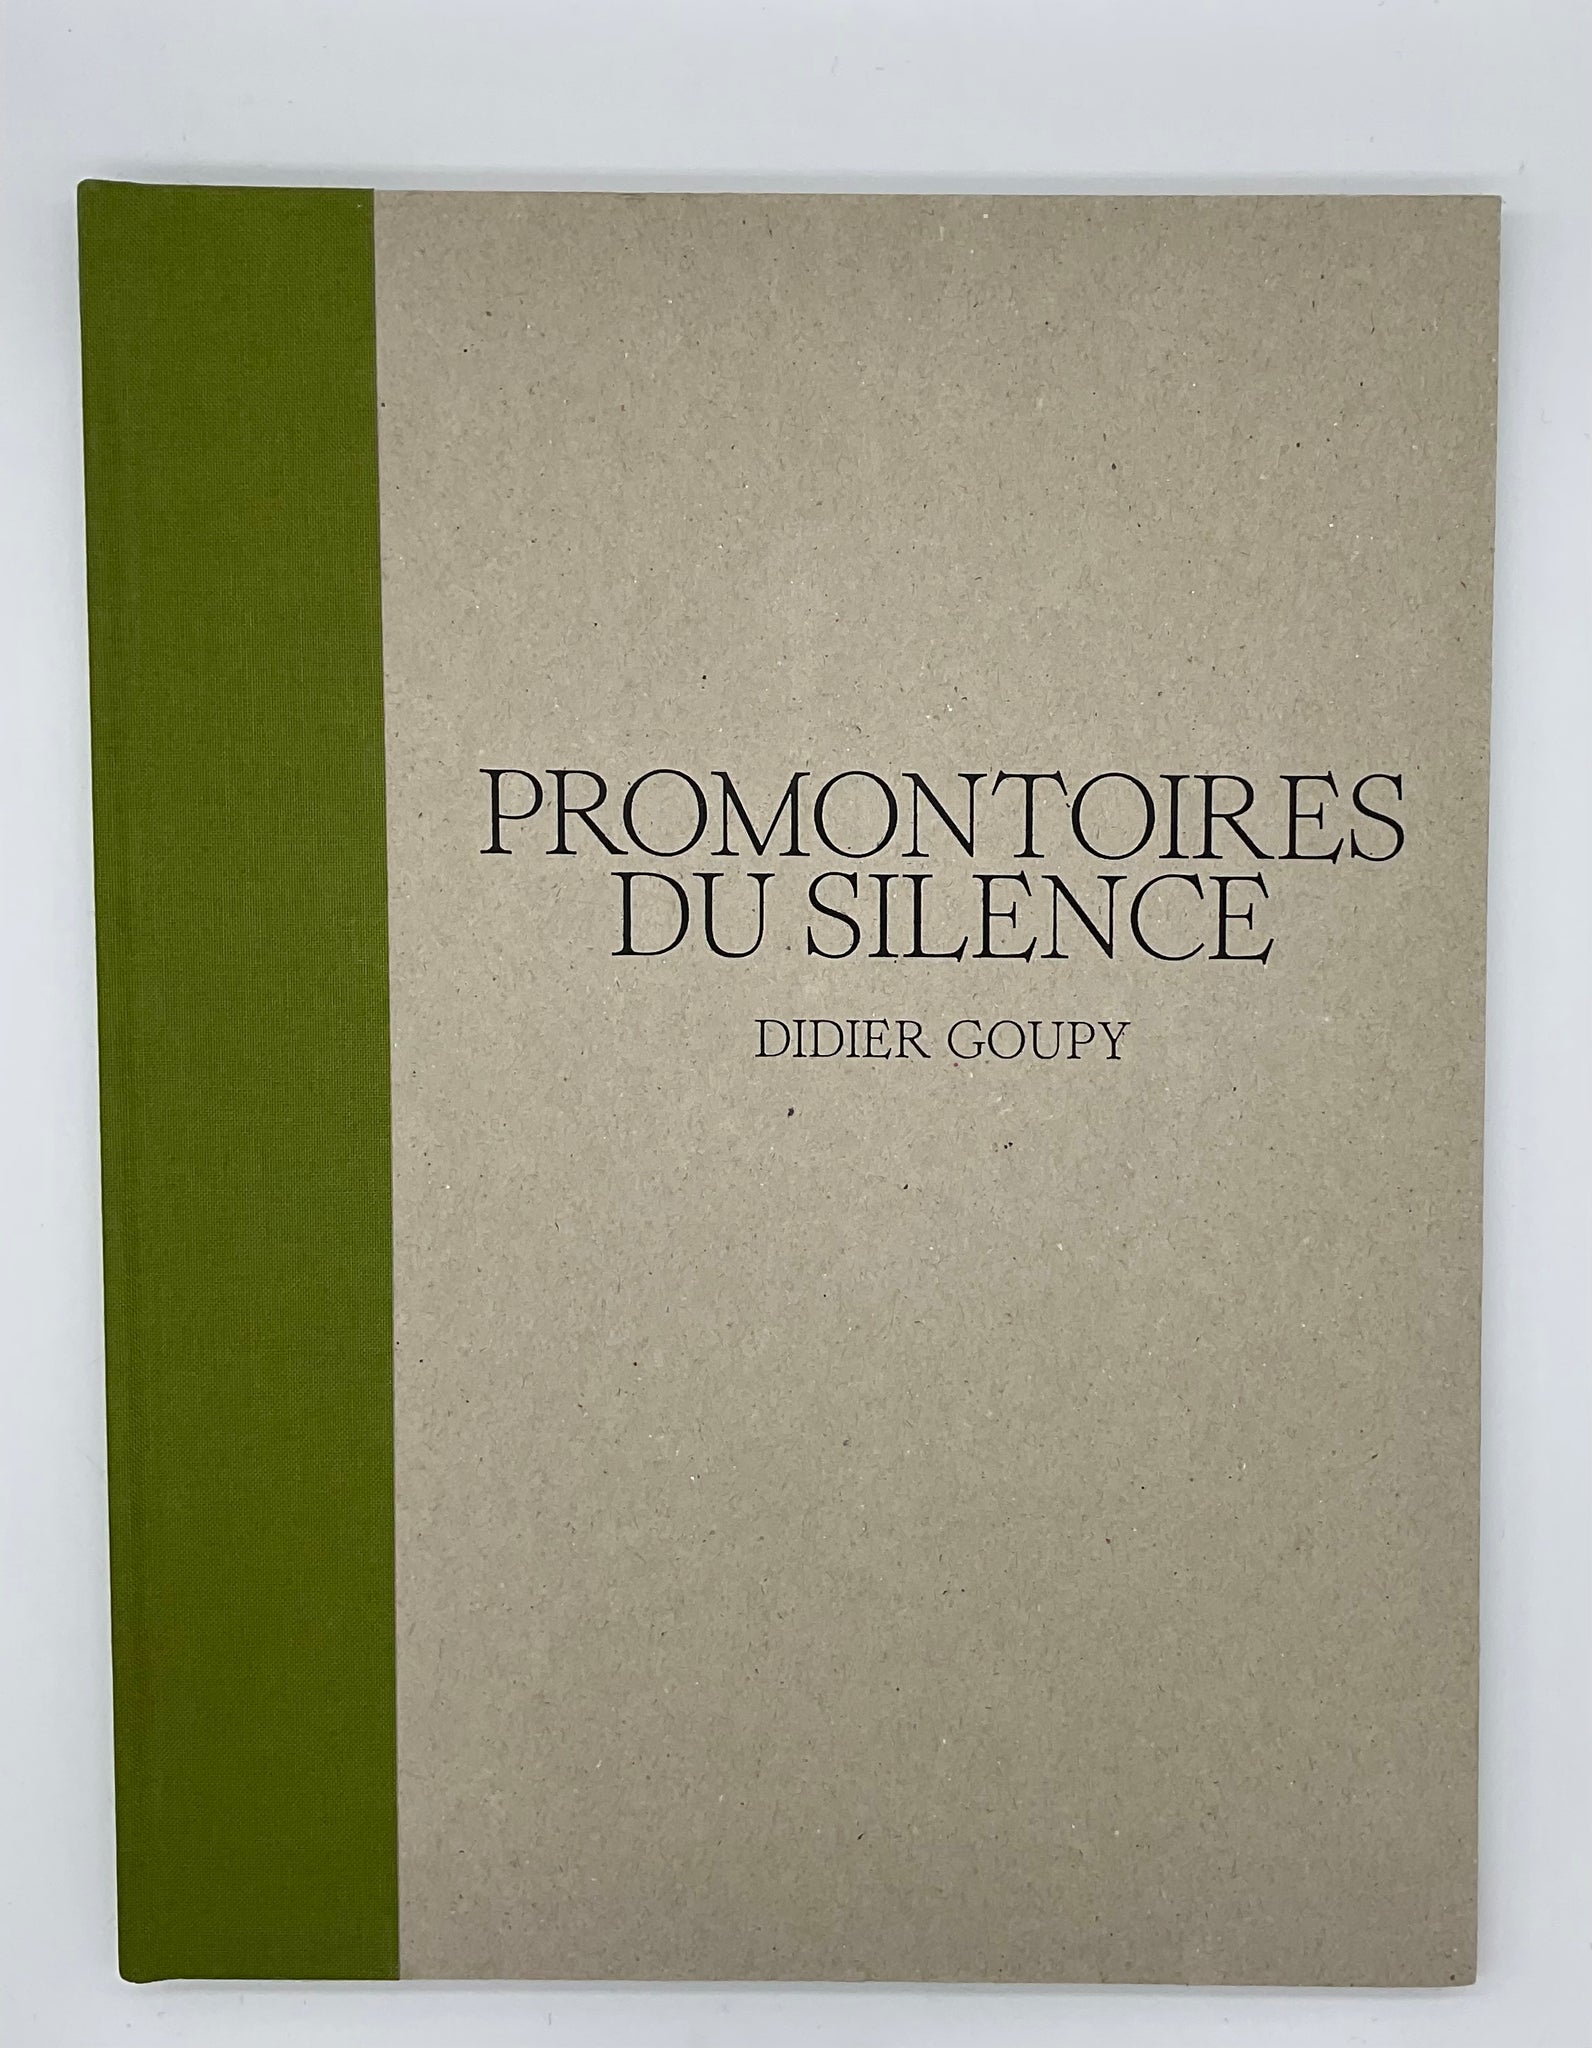 DIDIER GOUPY Livre " Promontoires du silence "